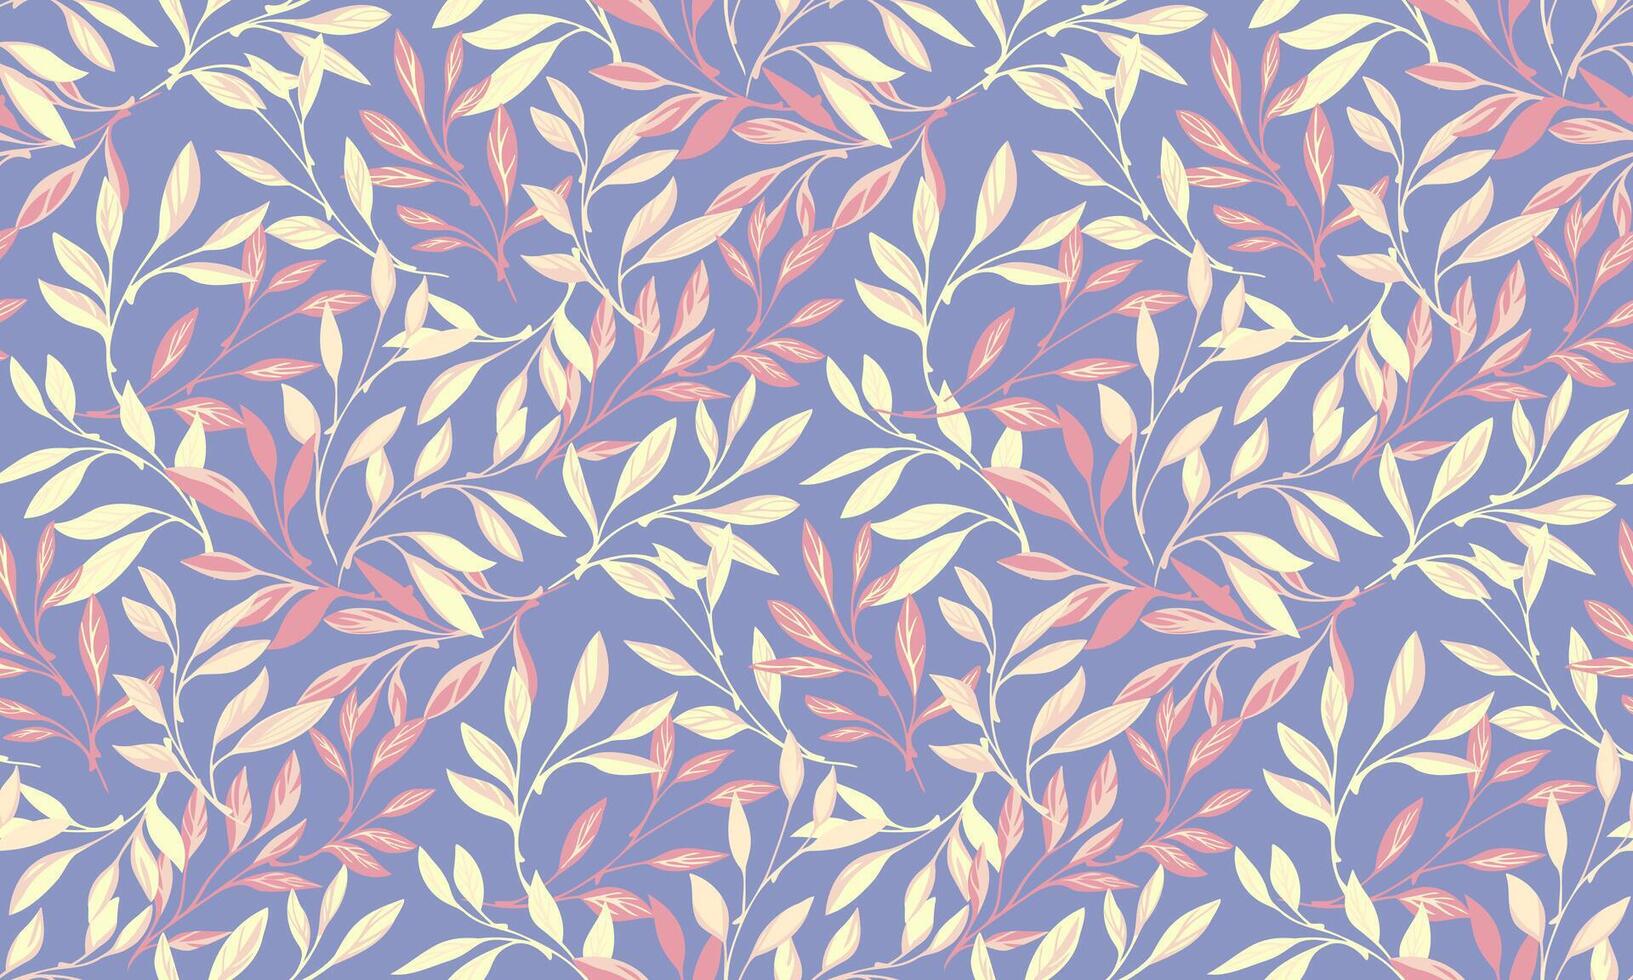 farbig Blumen- Blatt Geäst verflochten im ein nahtlos Muster. abstrakt, künstlerisch Wald Blätter Stängel auf ein violett Hintergrund. Natur botanisch gemustert. Hand gezeichnet. Vorlage zum Designs vektor